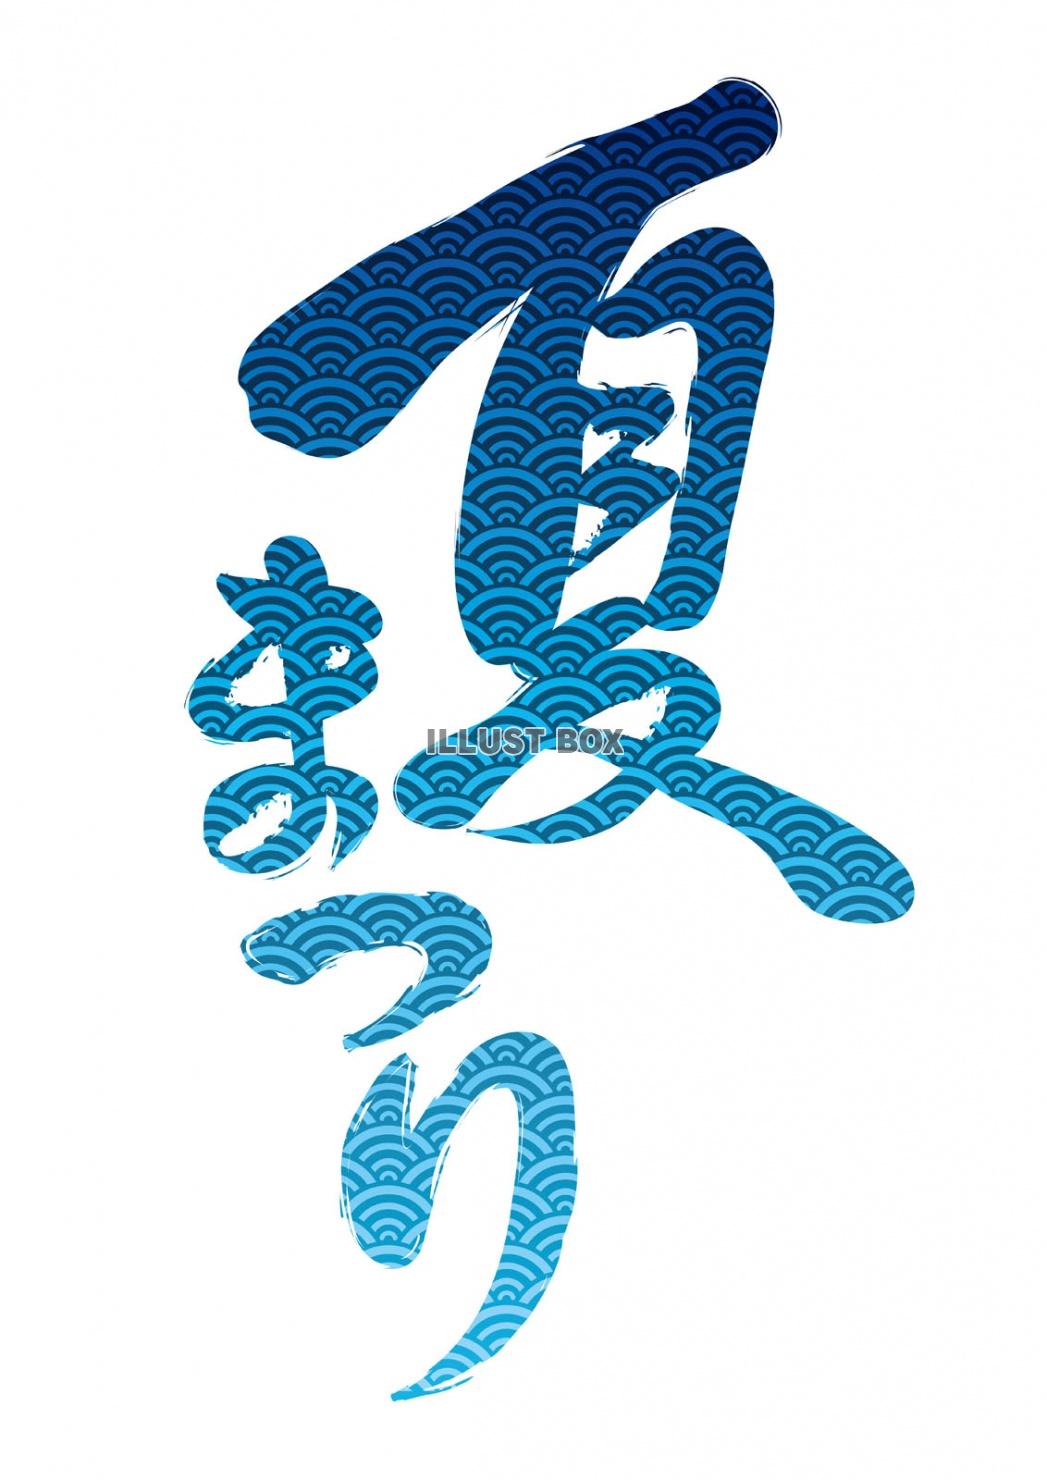 無料イラスト 筆文字風 夏祭りのロゴ